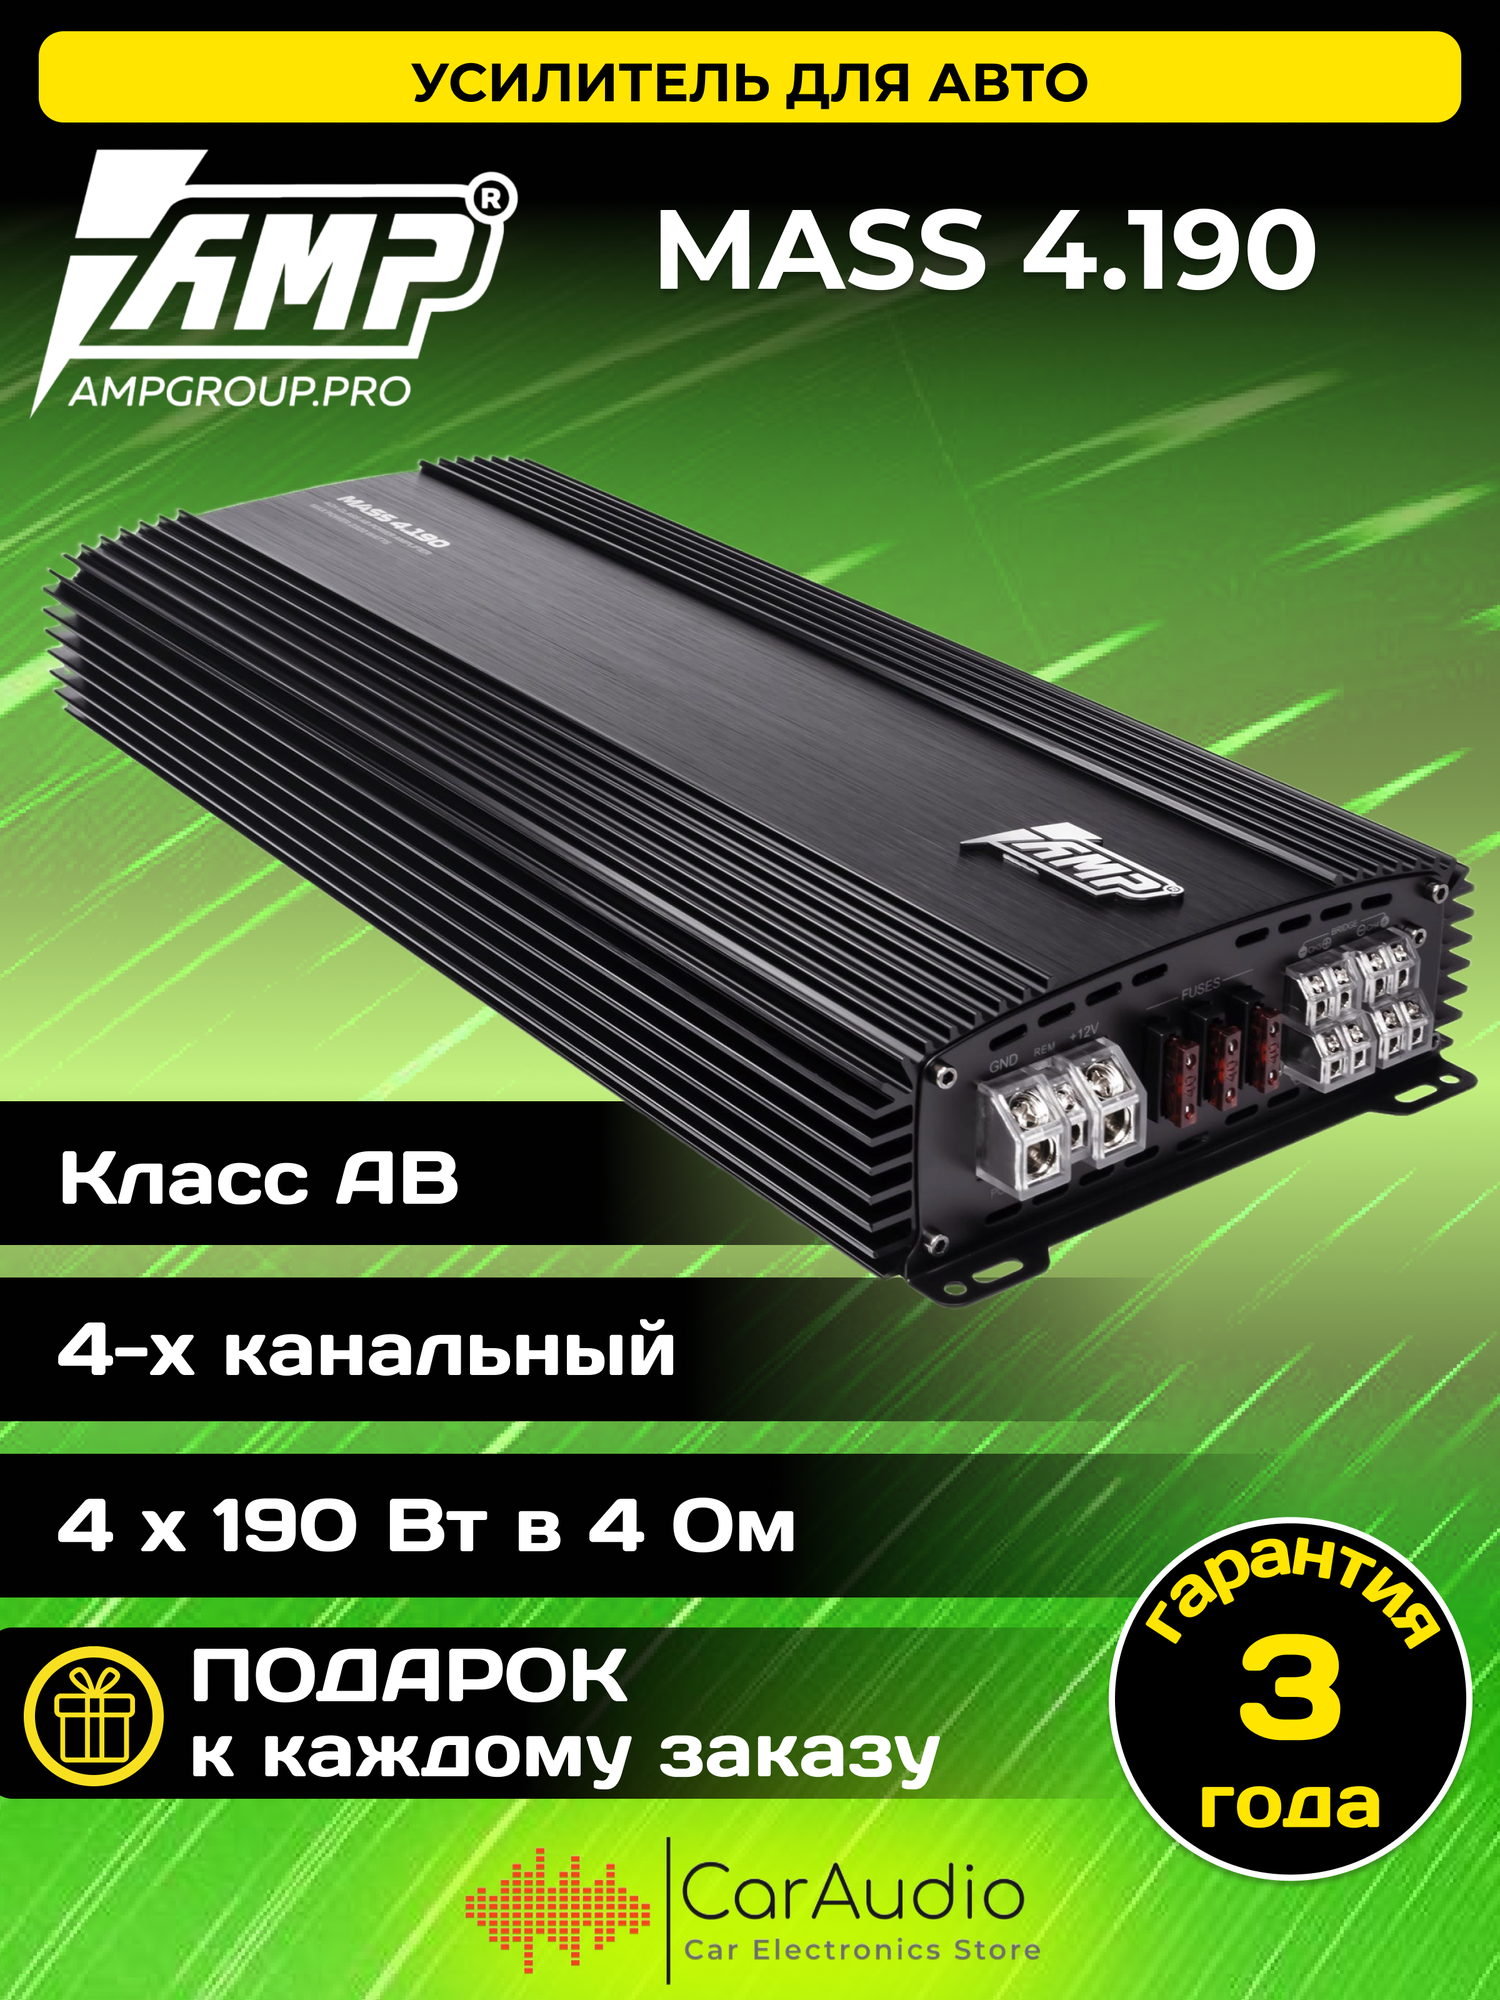 Автомобильный усилитель 4-х канальный Amp MASS 4.190